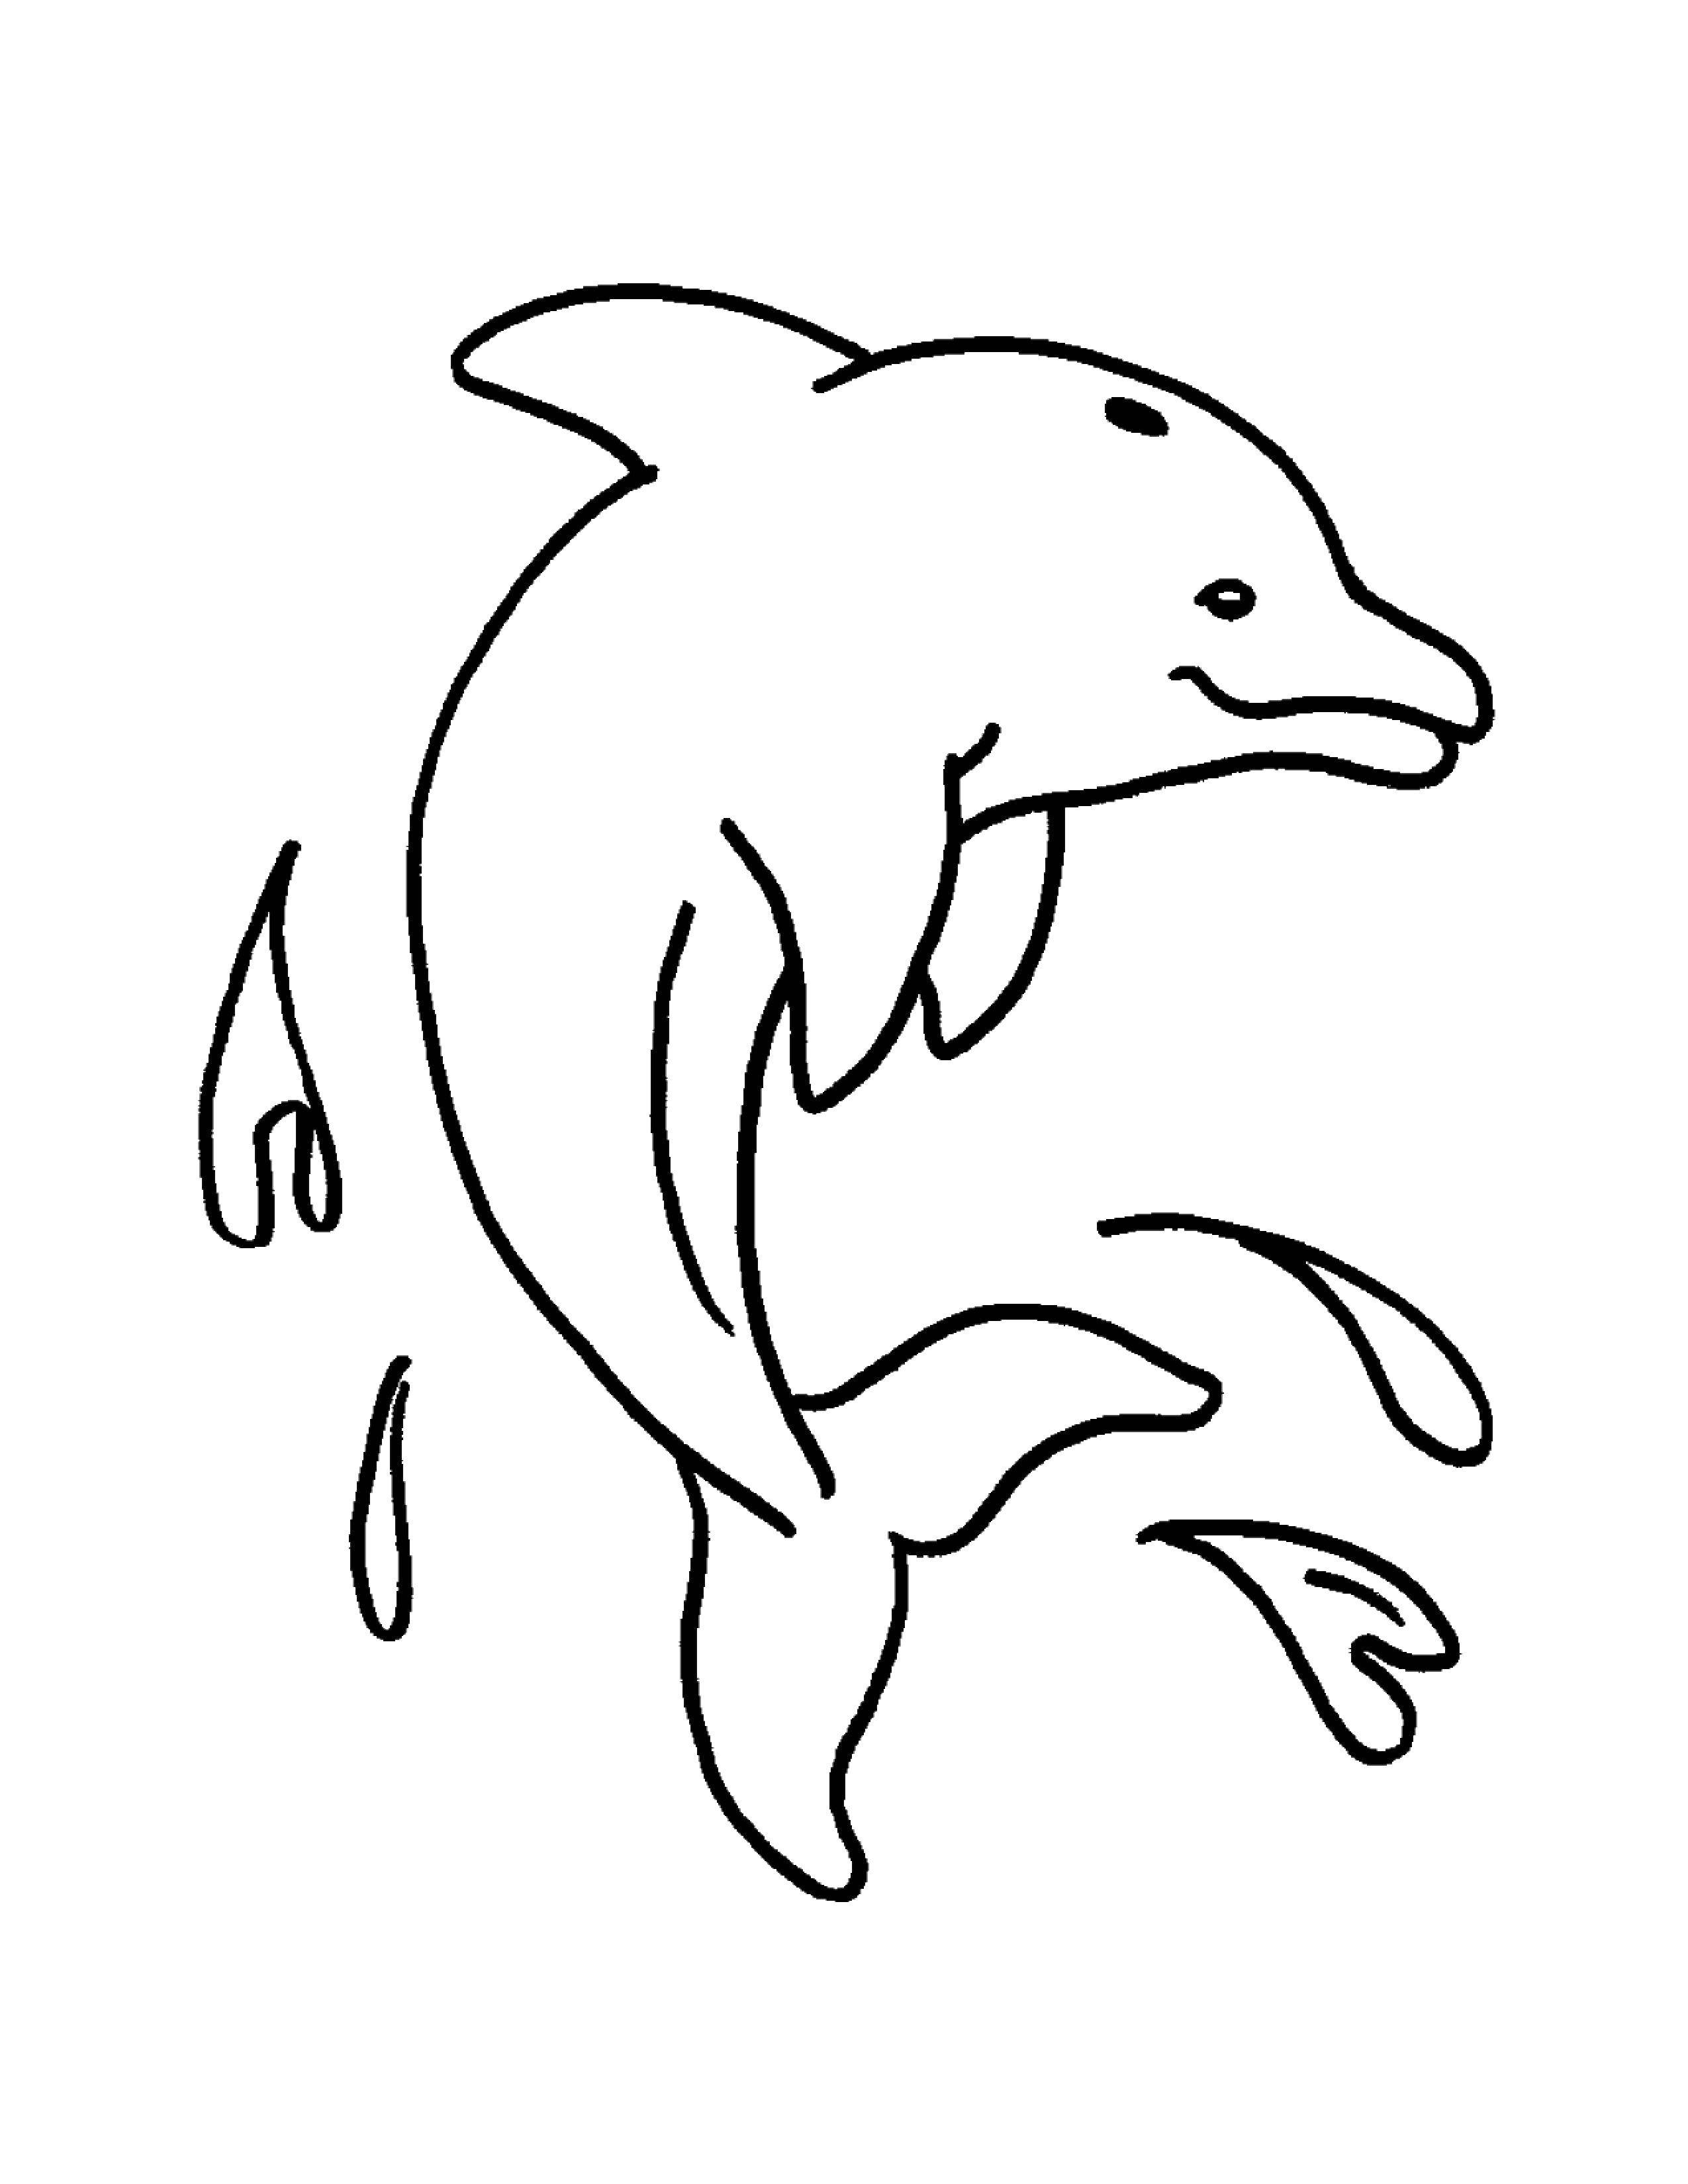   Капельки на дельфине